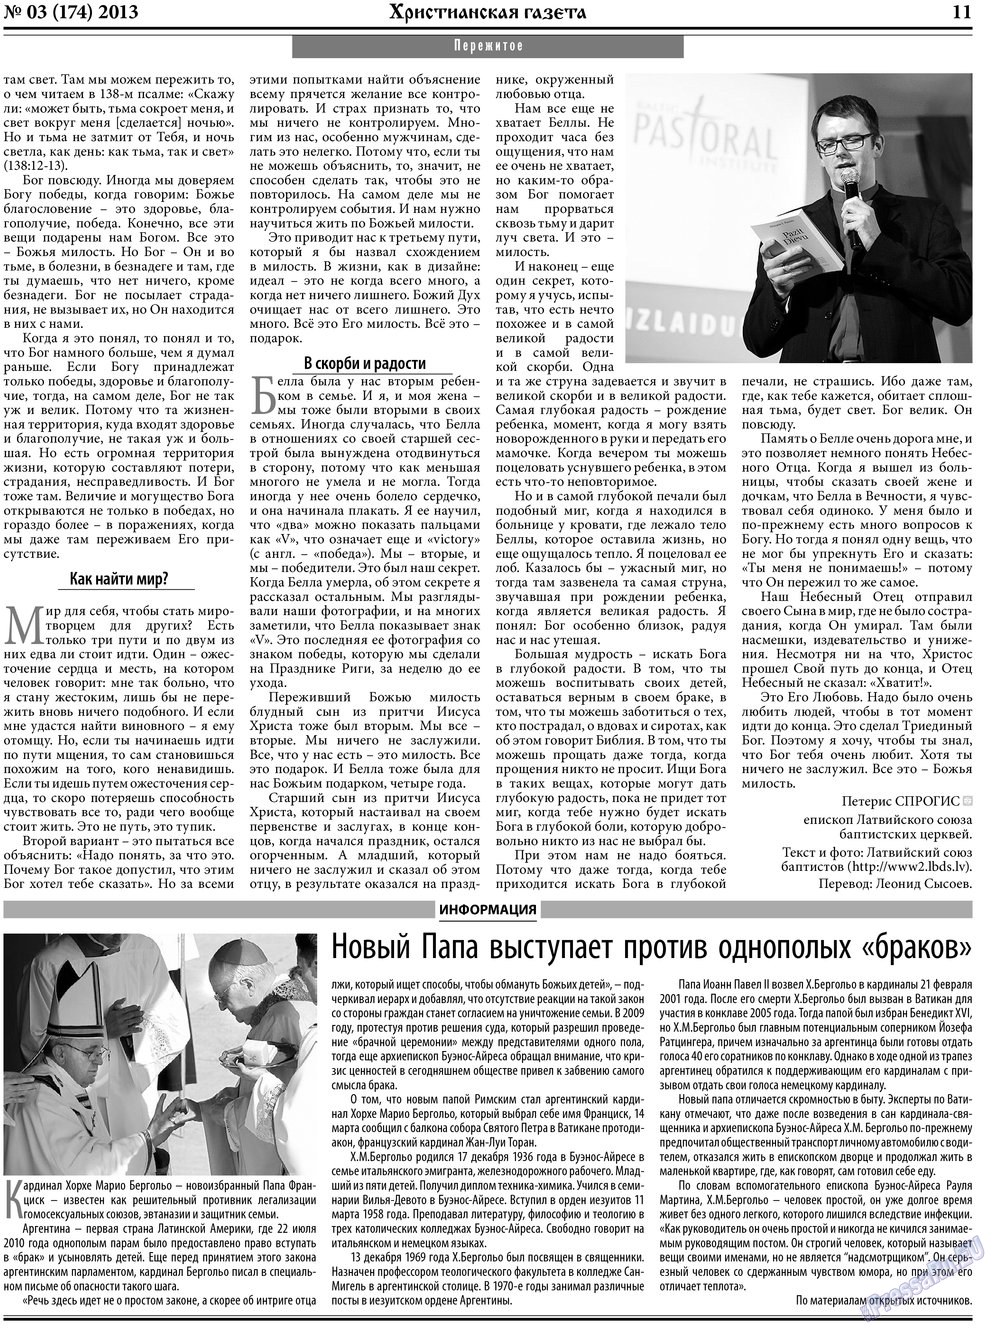 Христианская газета, газета. 2013 №3 стр.11